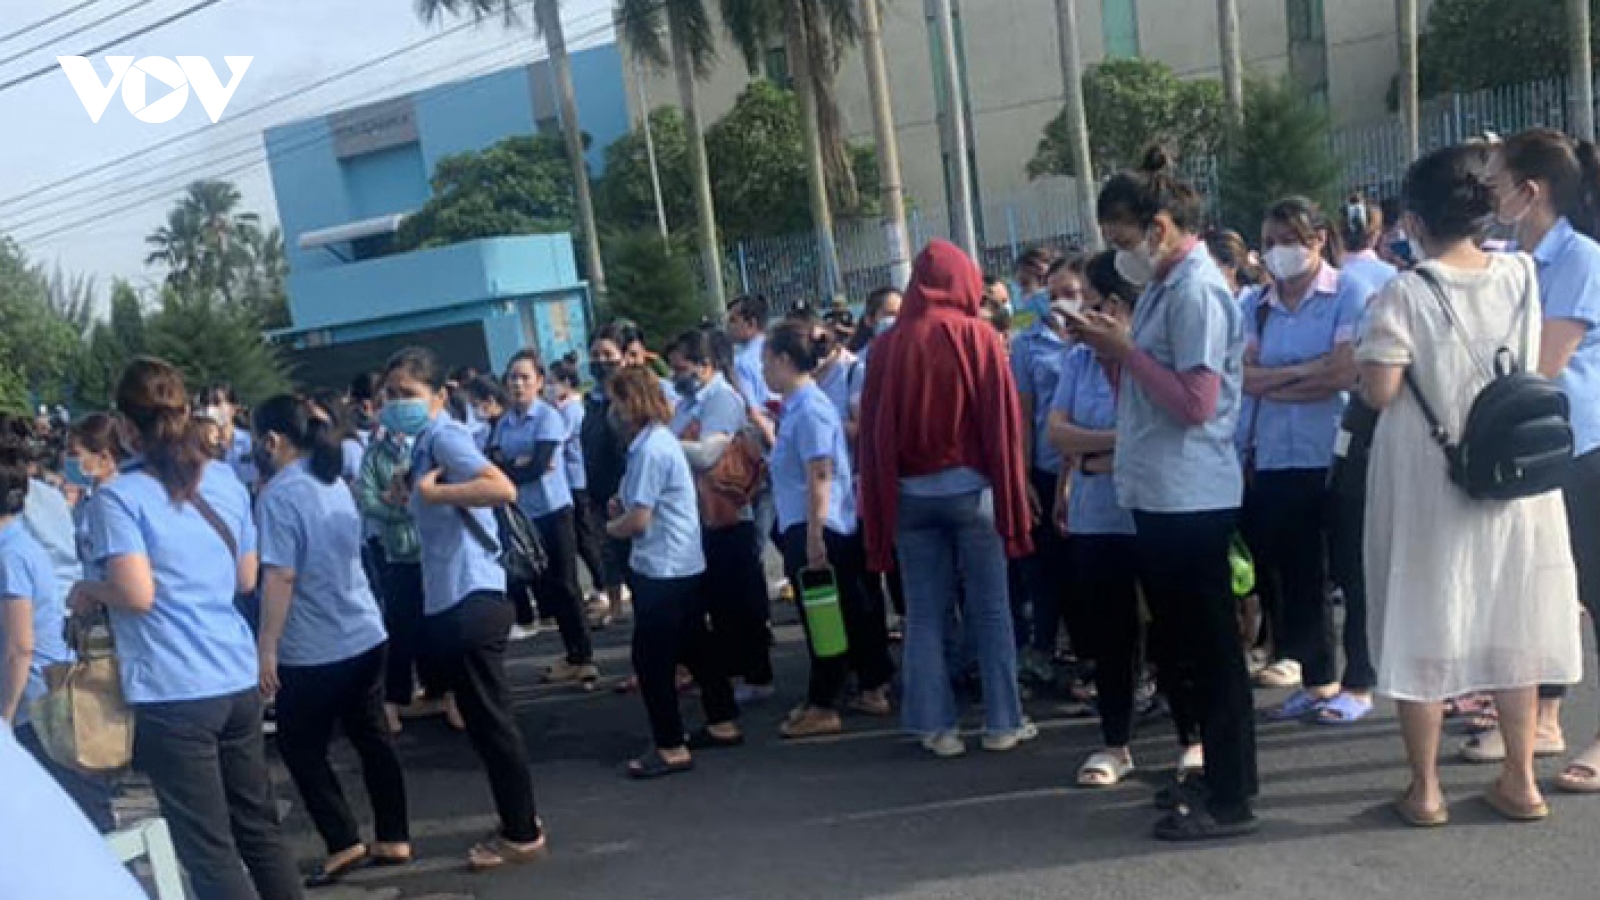 400 công nhân ở Đồng Nai ngừng việc tập thể vì chính sách lương